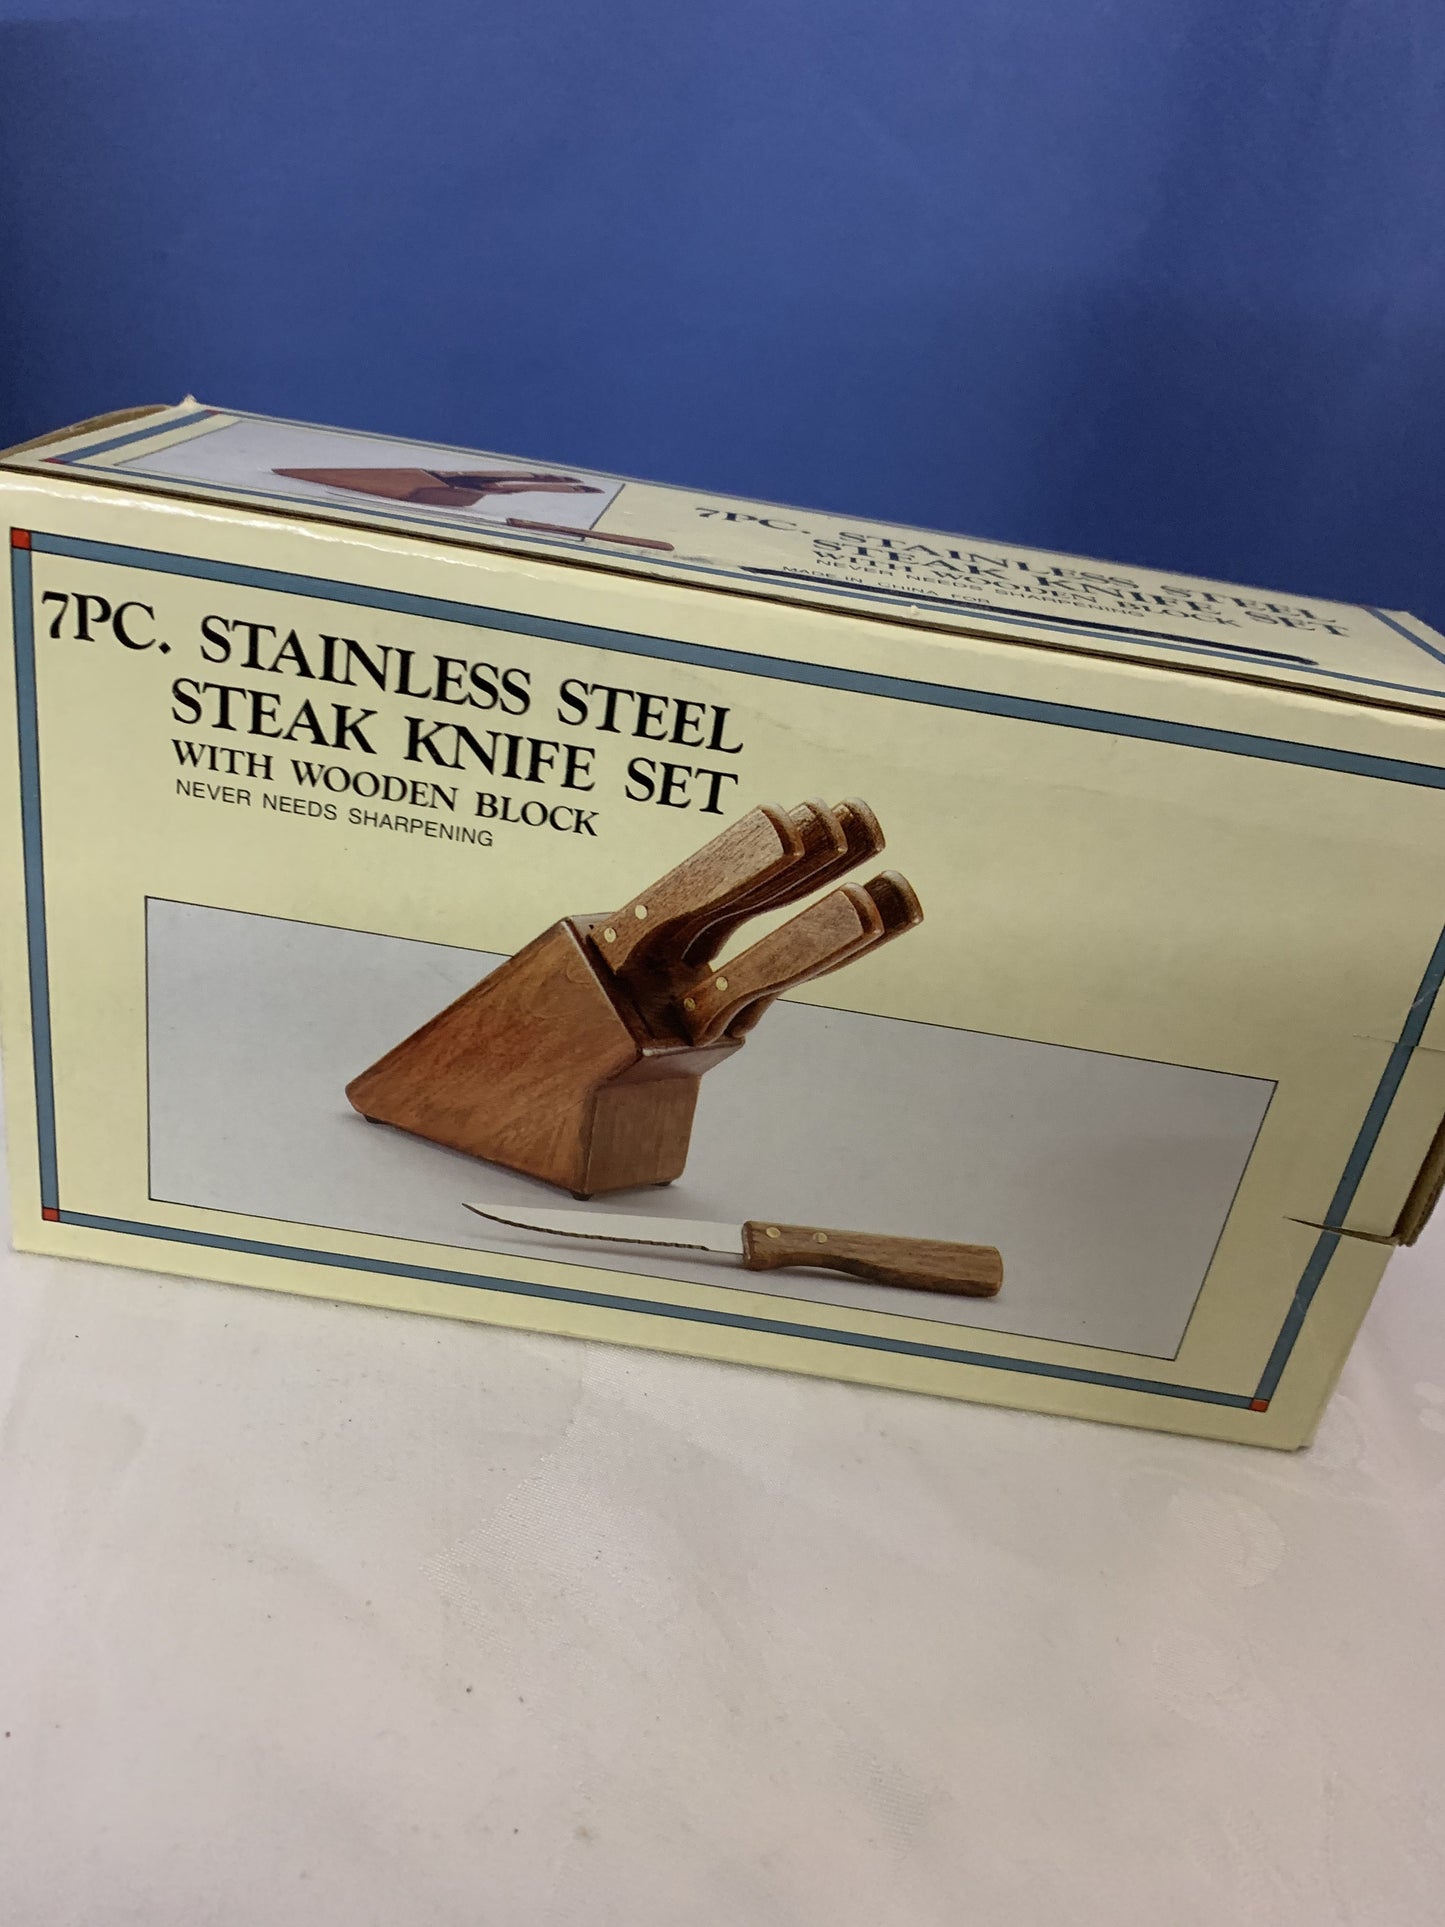 7 stk Stainless Steel Steakmesser Set mit Holzblock, neu